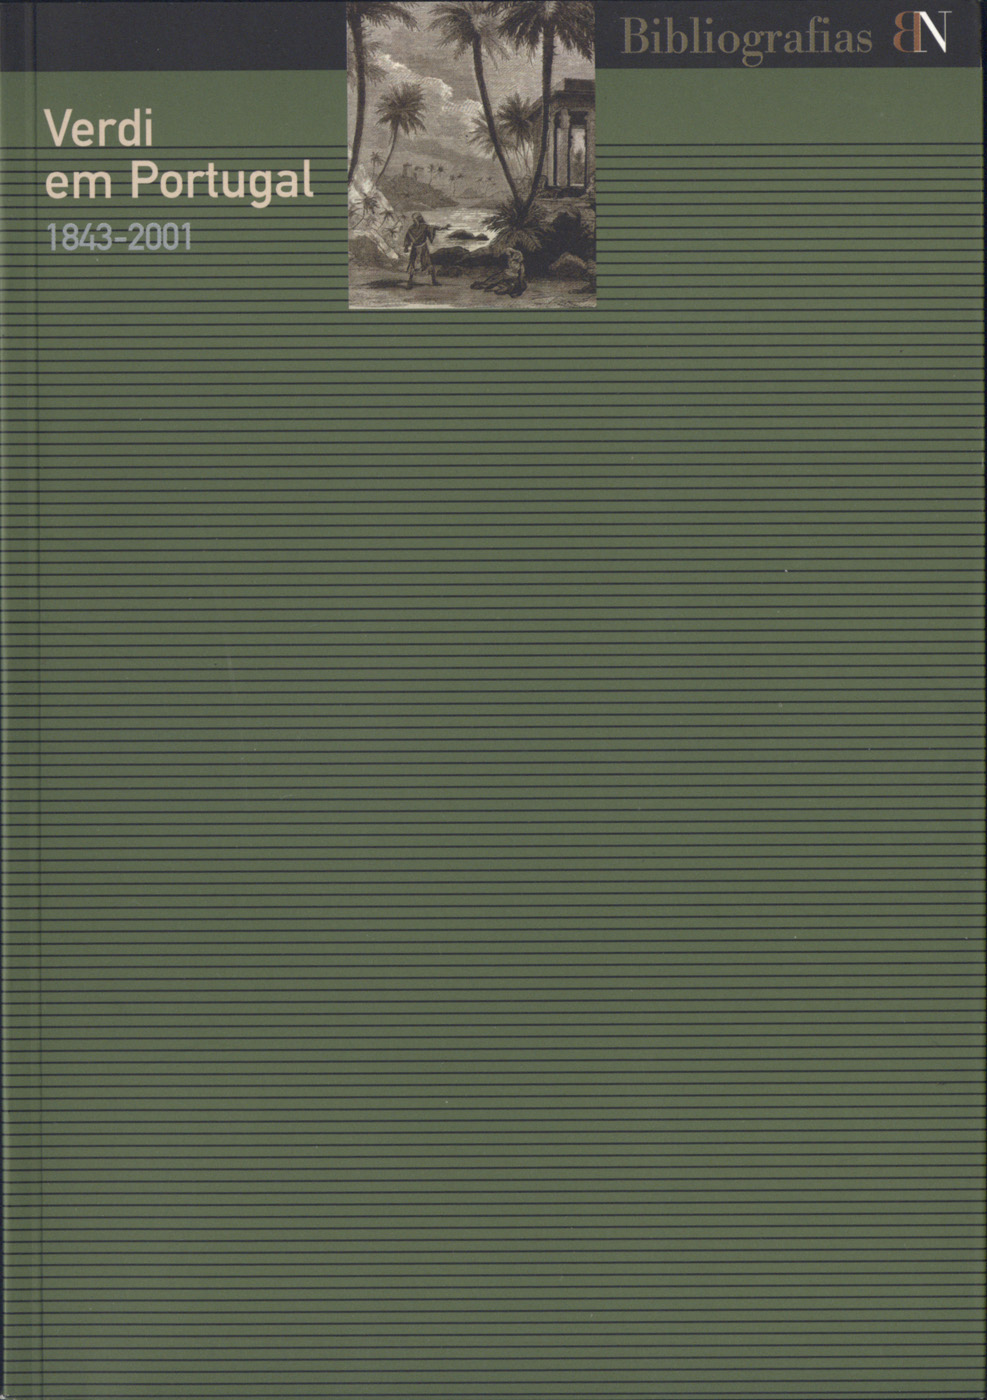 Verdi em Portugal, 1843-2001 : exposição comemorativa do centenário da morte do compositor : catálogo